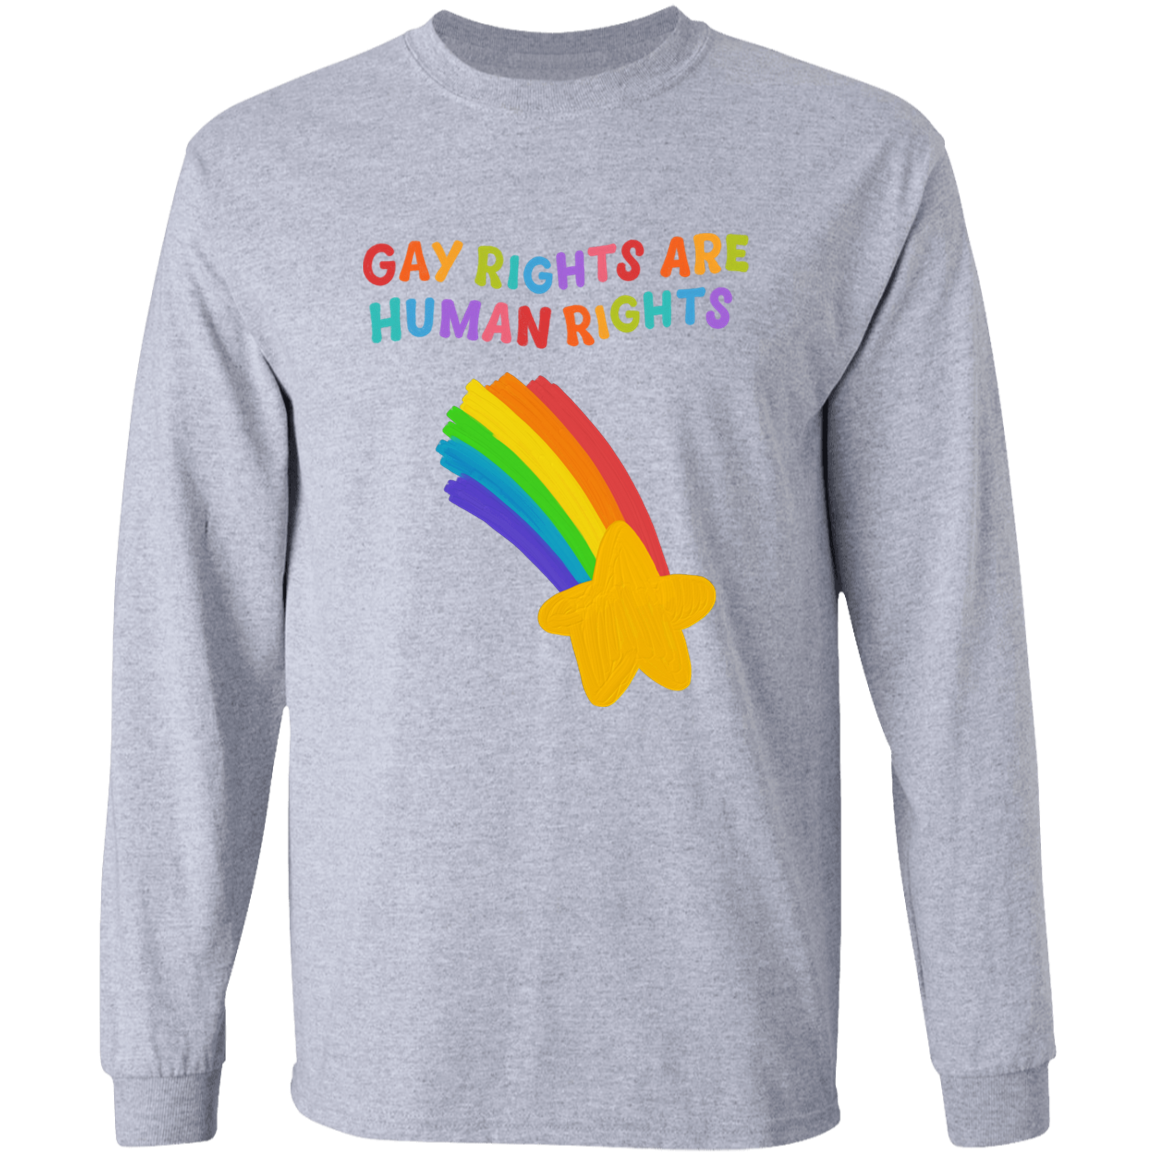 Gay Rights Long Sleeve Shirt